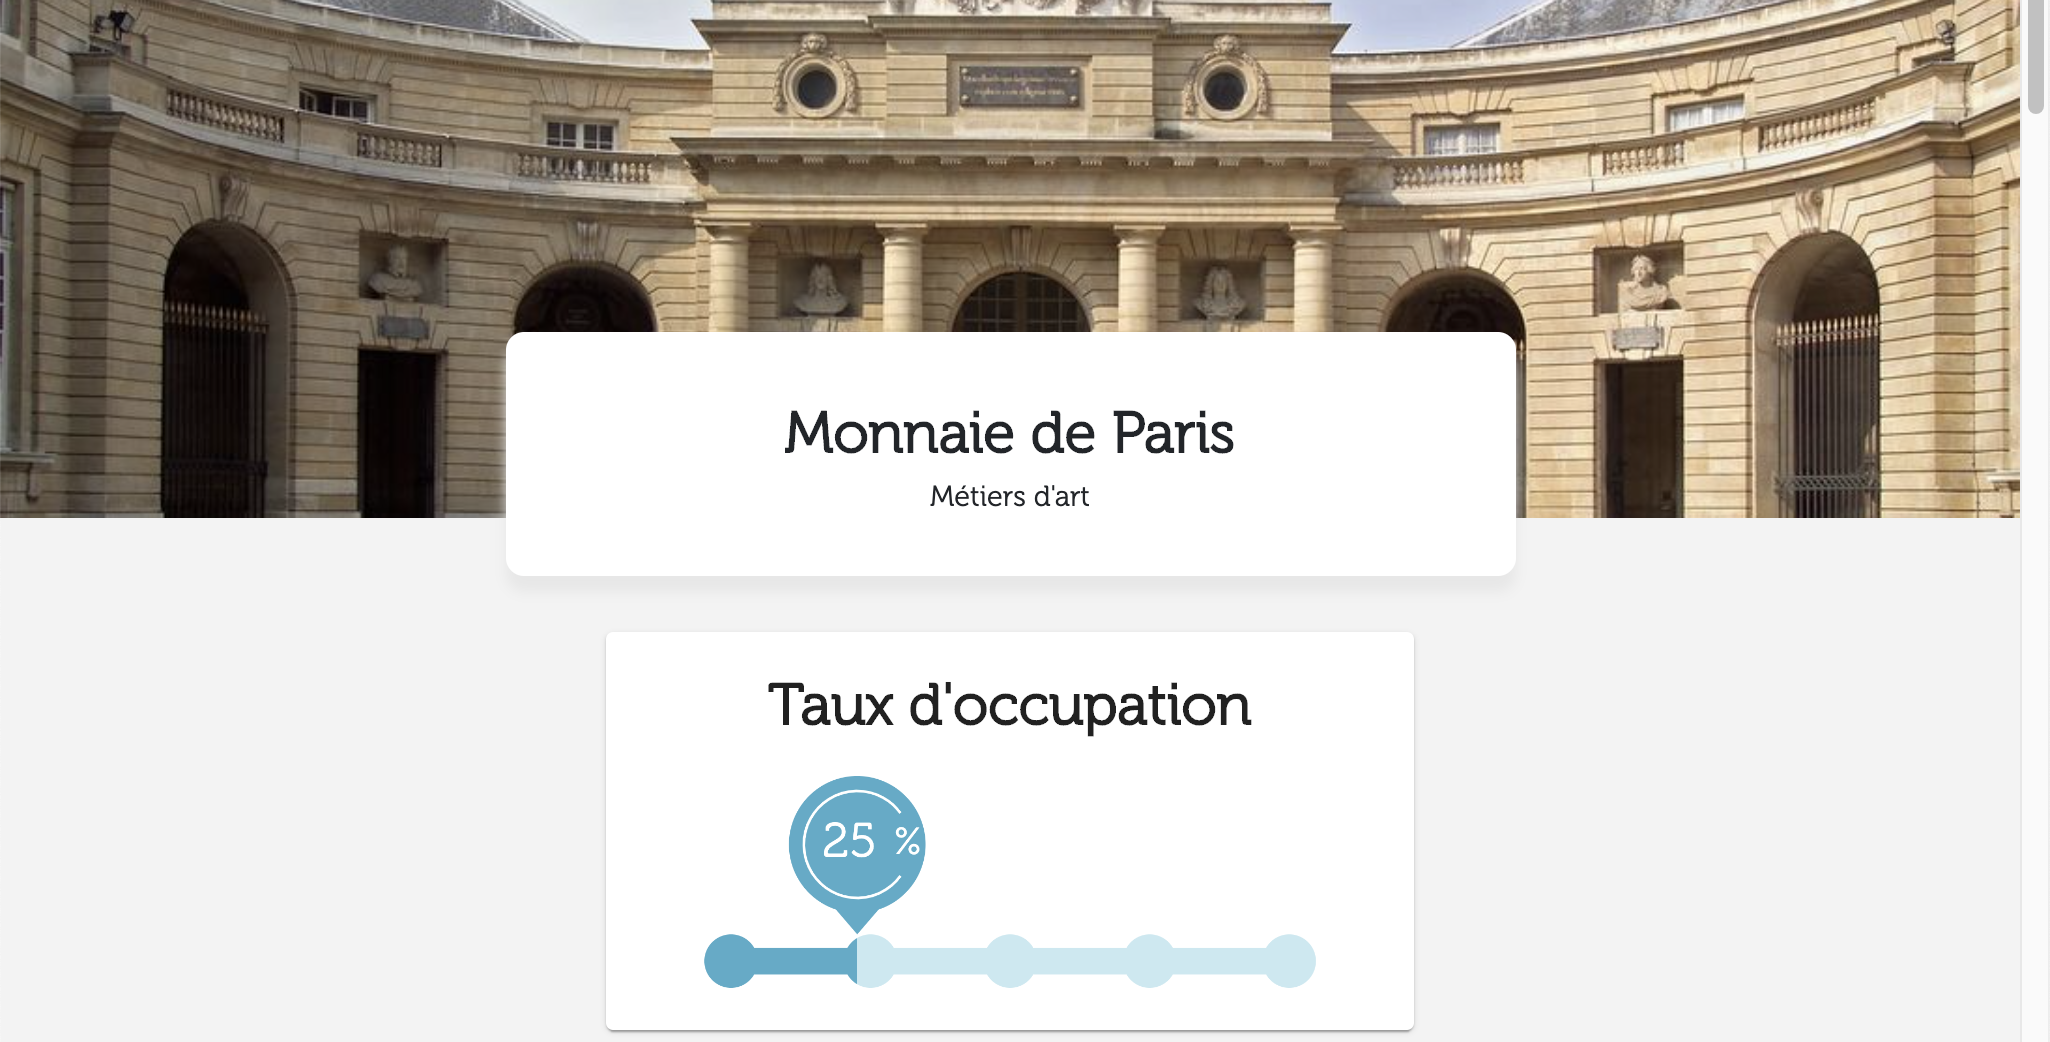 L'affluence en temps réel à la Monnaie de Paris depuis la réouverture